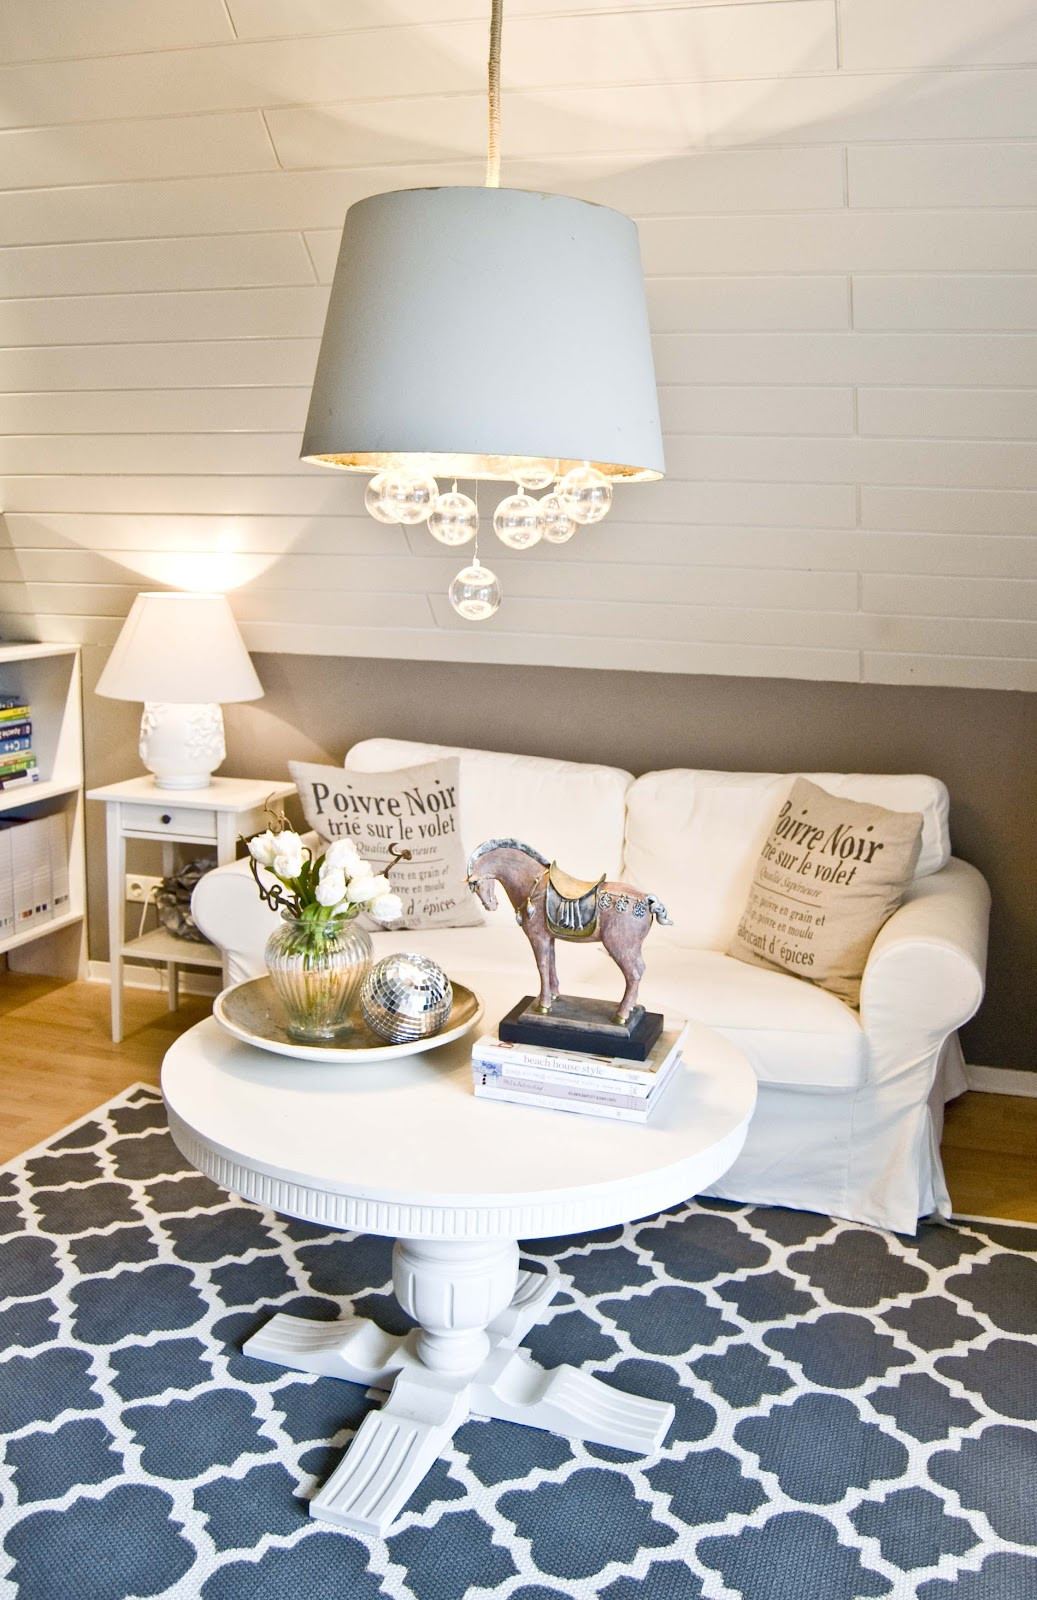 Best ideas about DIY Home Decorating Blog
. Save or Pin DIY 10 ideias simples para mudar a decor da sua casa Now.